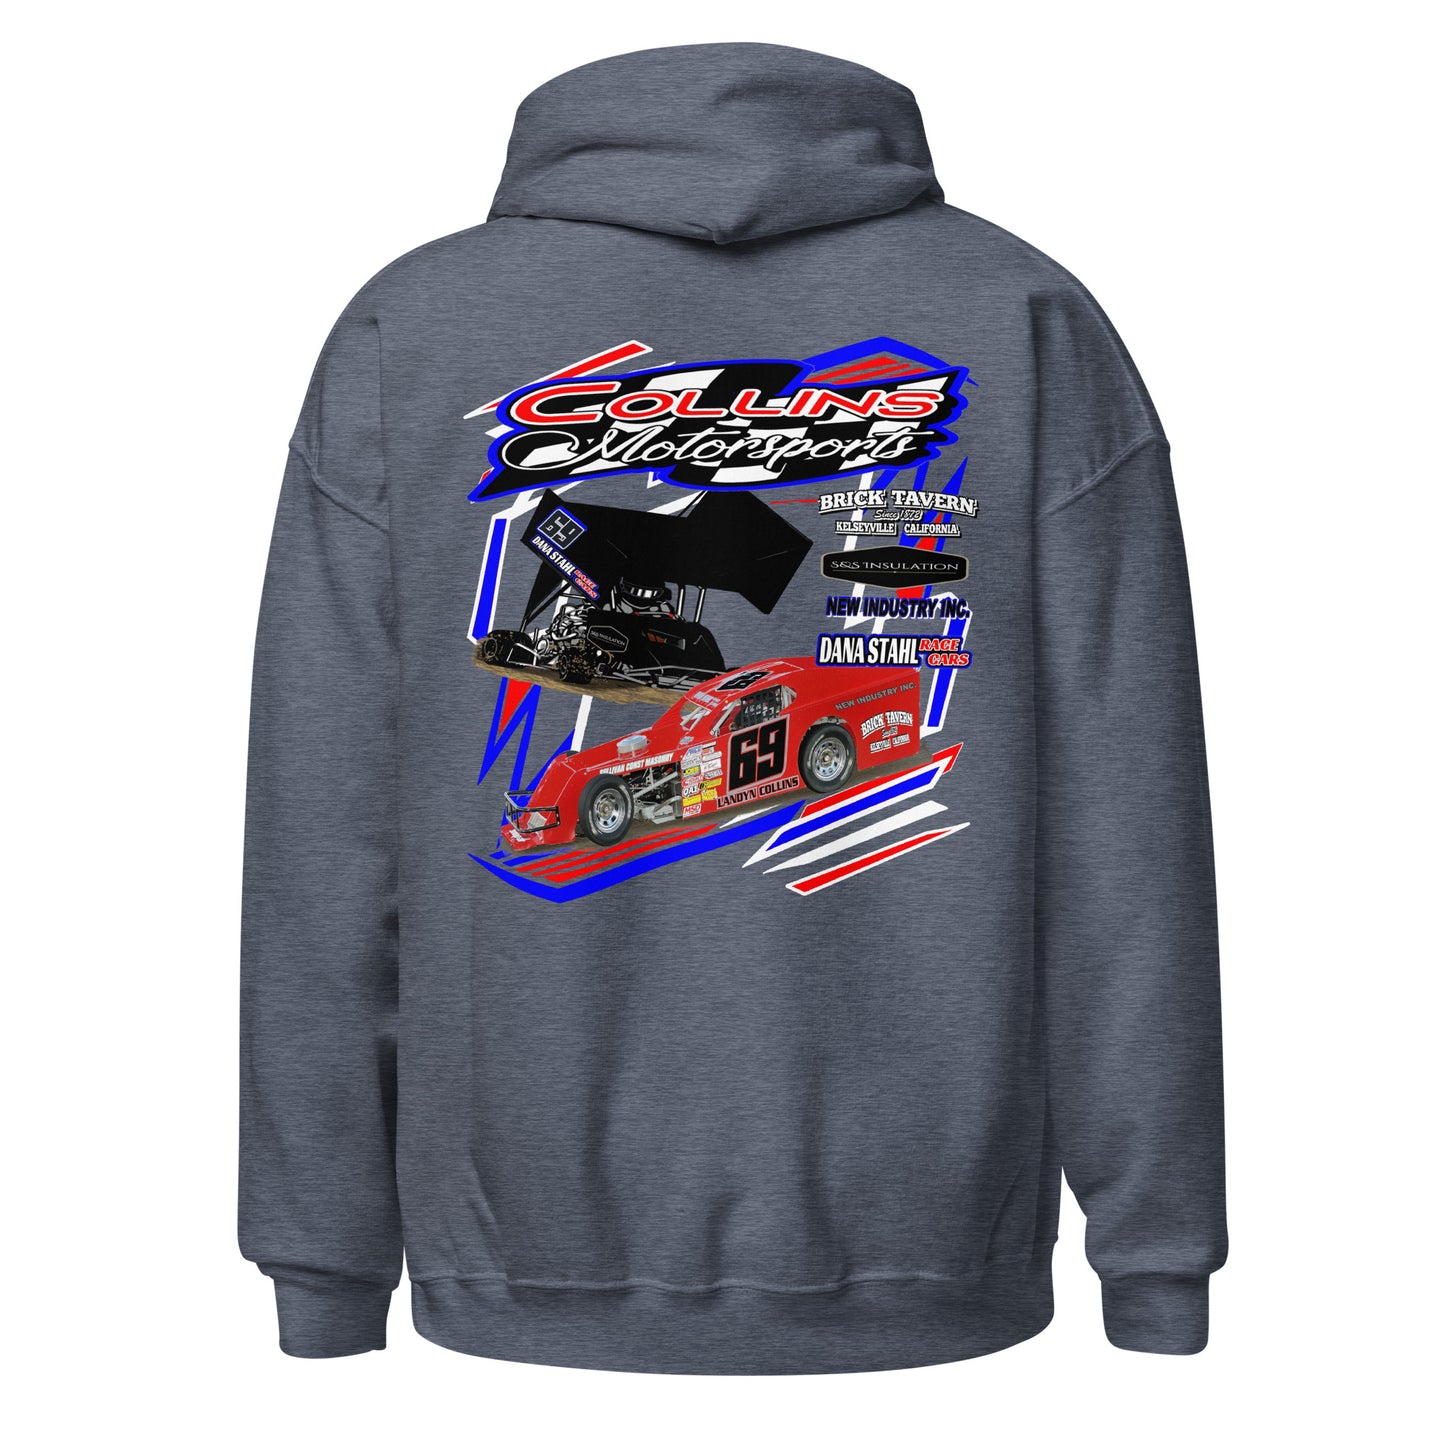 Collins Motorsports Adult Hoodie Sweatshirt